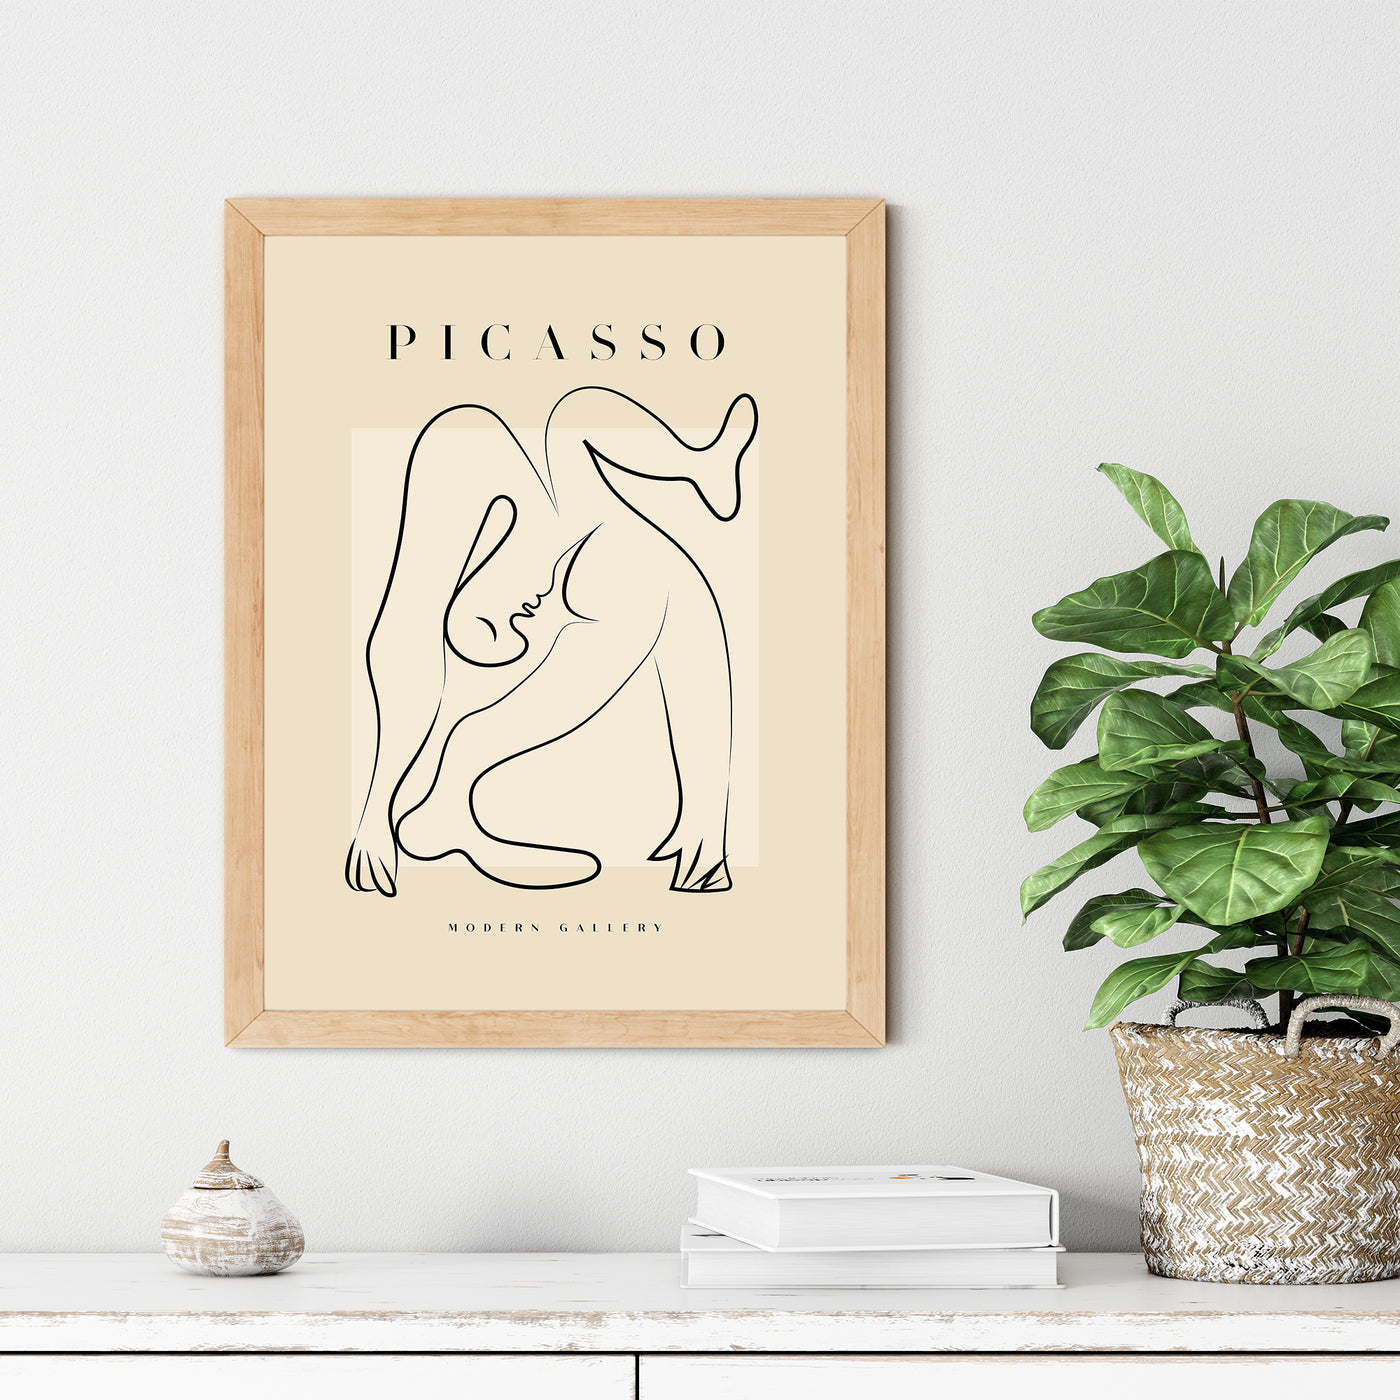 Pablo Picasso - #7